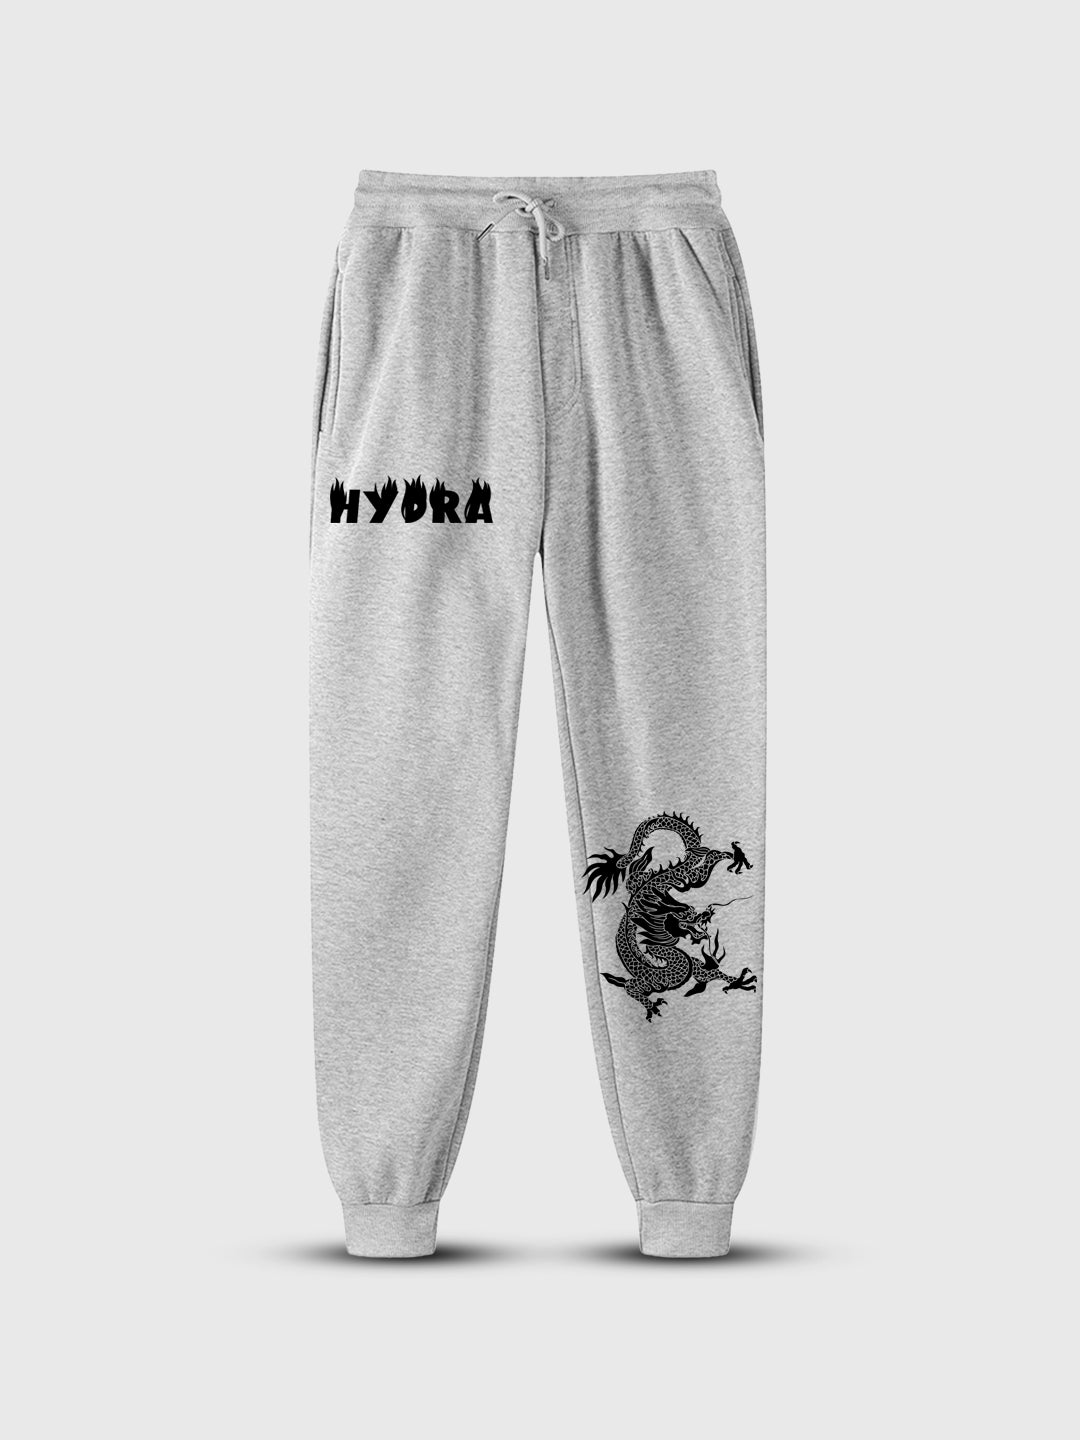 Men' Hydra  Printed Prime Trouser